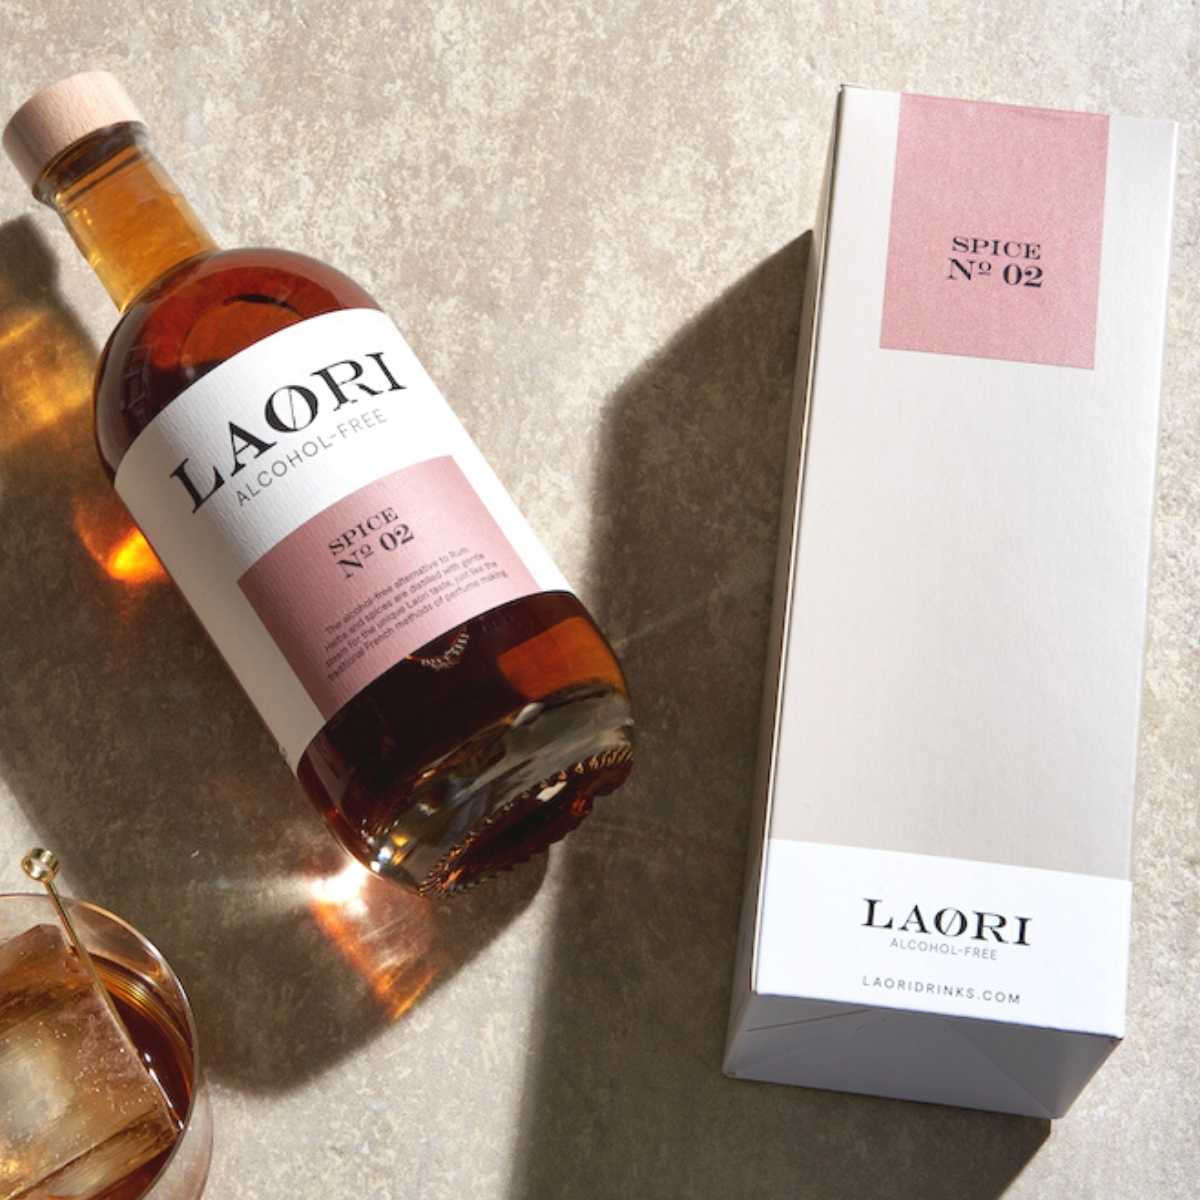 Laori Spice No 02 (0.5l) - in a stylish gift box